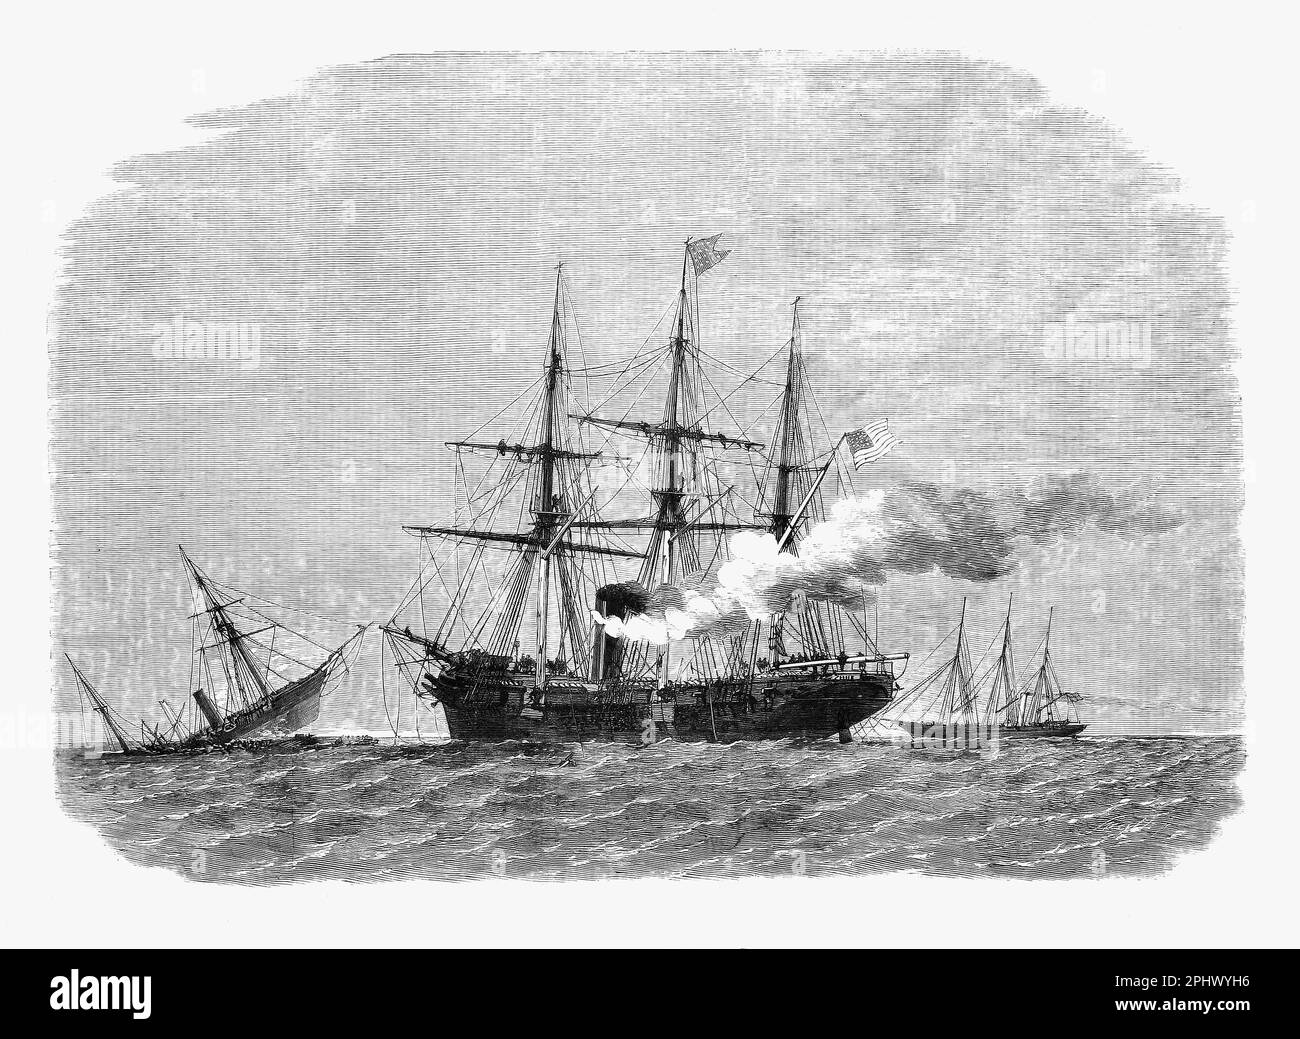 In der Schlacht von Cherbourg stürzte der Handelsstreiter der Konföderierten CSS Alabama nach einer Schlacht mit der USS Kearsarge, einem Schlachthaufen der Mohikanischen Klasse, im Jahr 1863 während des Amerikanischen Bürgerkriegs. Stockfoto